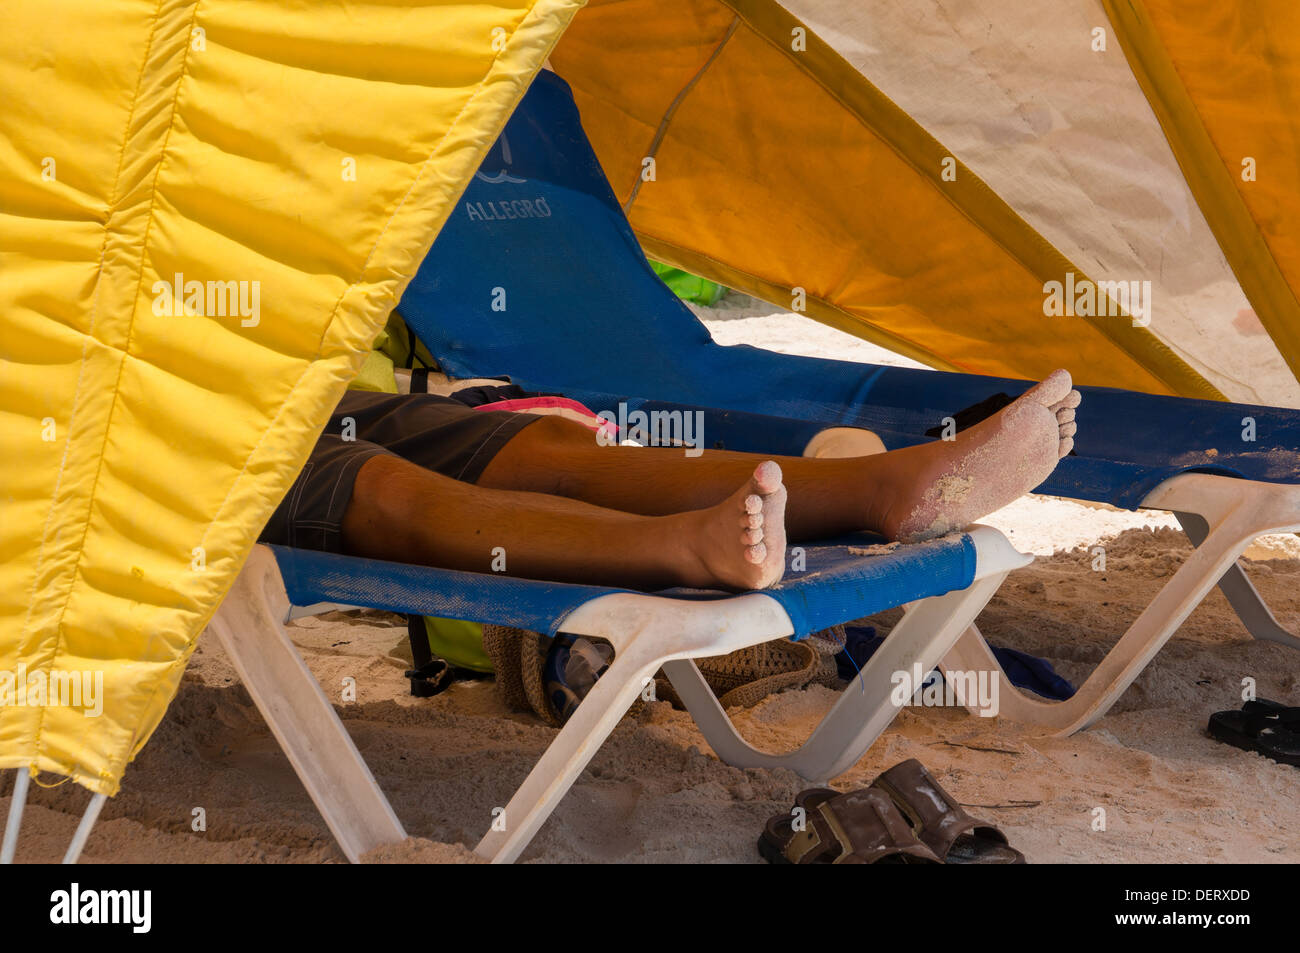 Sun tende sul Baby Beach di Aruba Foto Stock